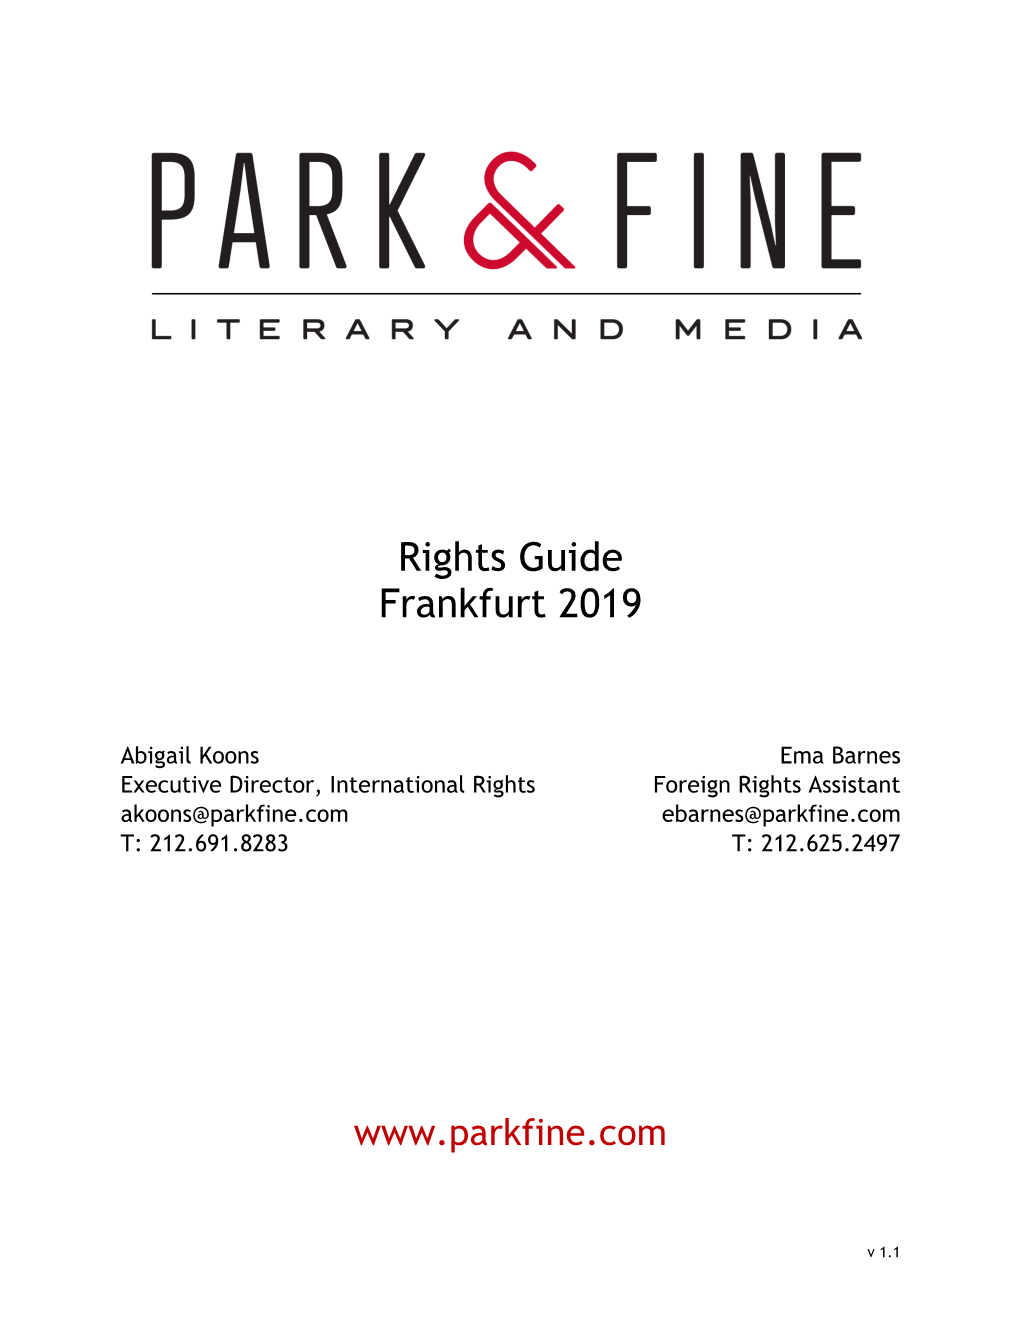 Rights Guide Frankfurt 2019